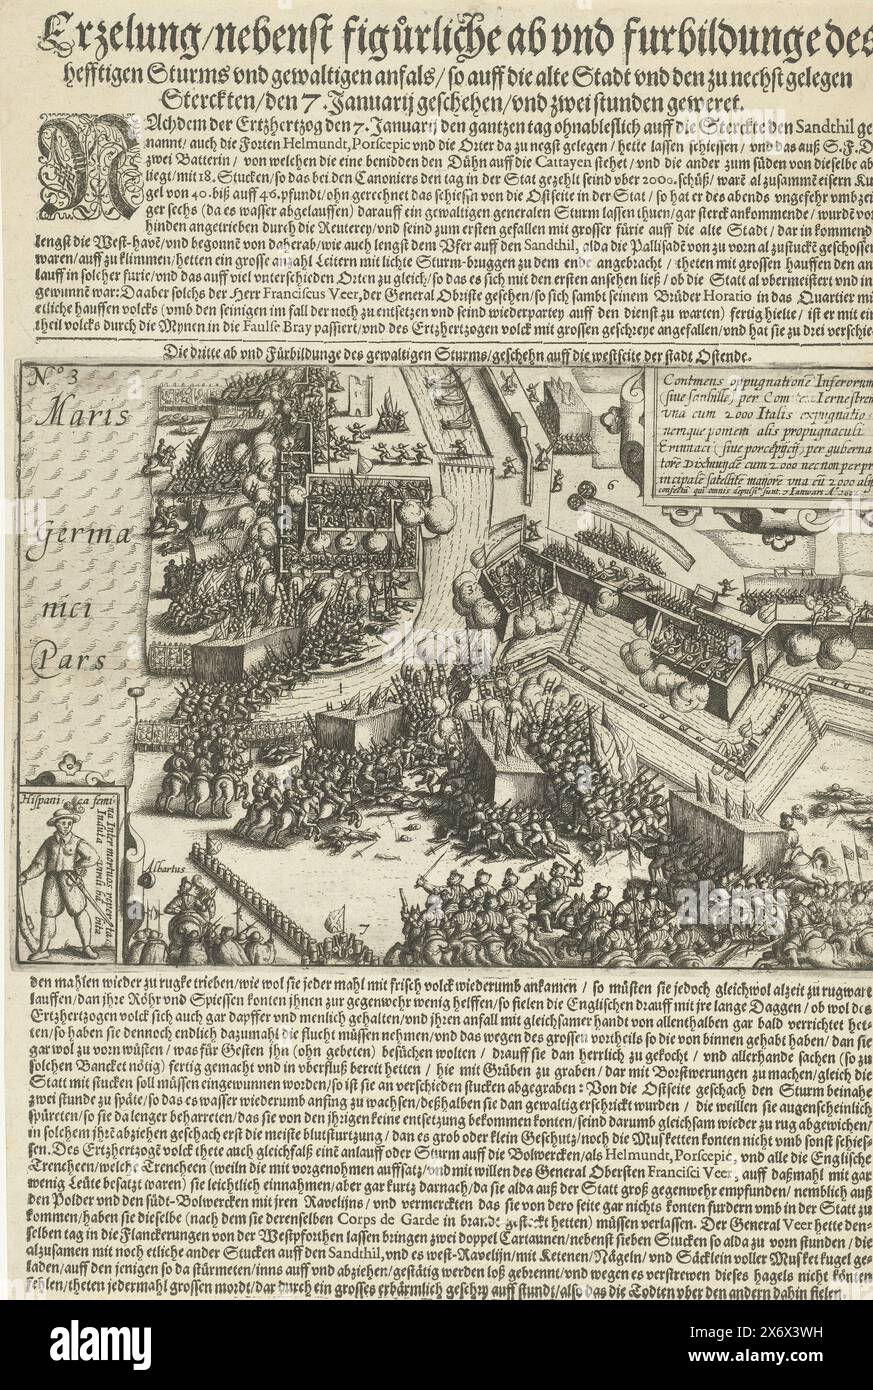 Storming of Ostende, 1602, Erzelung, nebenst figurlichr ab et furbildunge des fortes tempêtes et des anfaux lourds, ainsi sur la vieille ville et les étoiles les plus proches, le 7ème. Janvier, et deux geweret stunden (titre sur l'objet), forte prise des défenses d'Ostende par les troupes espagnoles sous Albrecht, le 7 janvier 1602. En bas à gauche un encart avec une photo d'une soldat espagnole impliquée dans les combats, en haut à droite un cartouche avec une inscription en latin. Imprimé sur une feuille avec des textes en allemand, au-dessus et au-dessous de l'image. Numéroté : N° 3., imprimeur, imprimeur : anonyme, imprimeur Banque D'Images